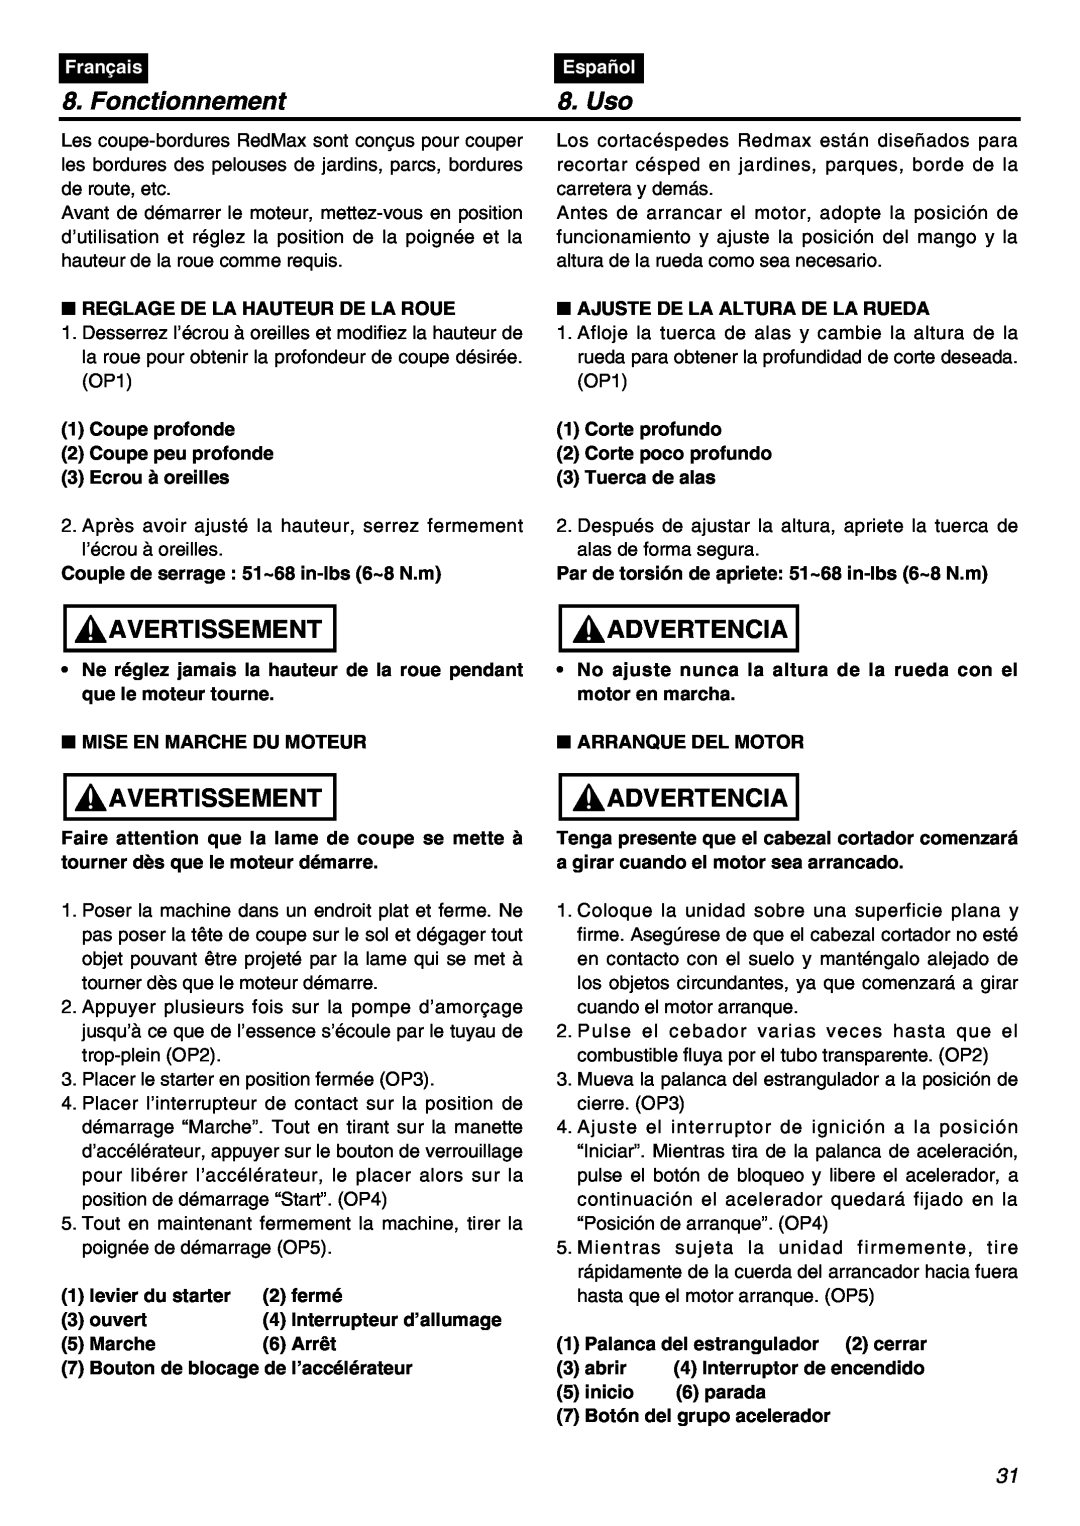 RedMax HEZ2602S, HEZ3001S, HEZ2401S manual Fonctionnement, Uso, Avertissement, Advertencia, Français, Español 